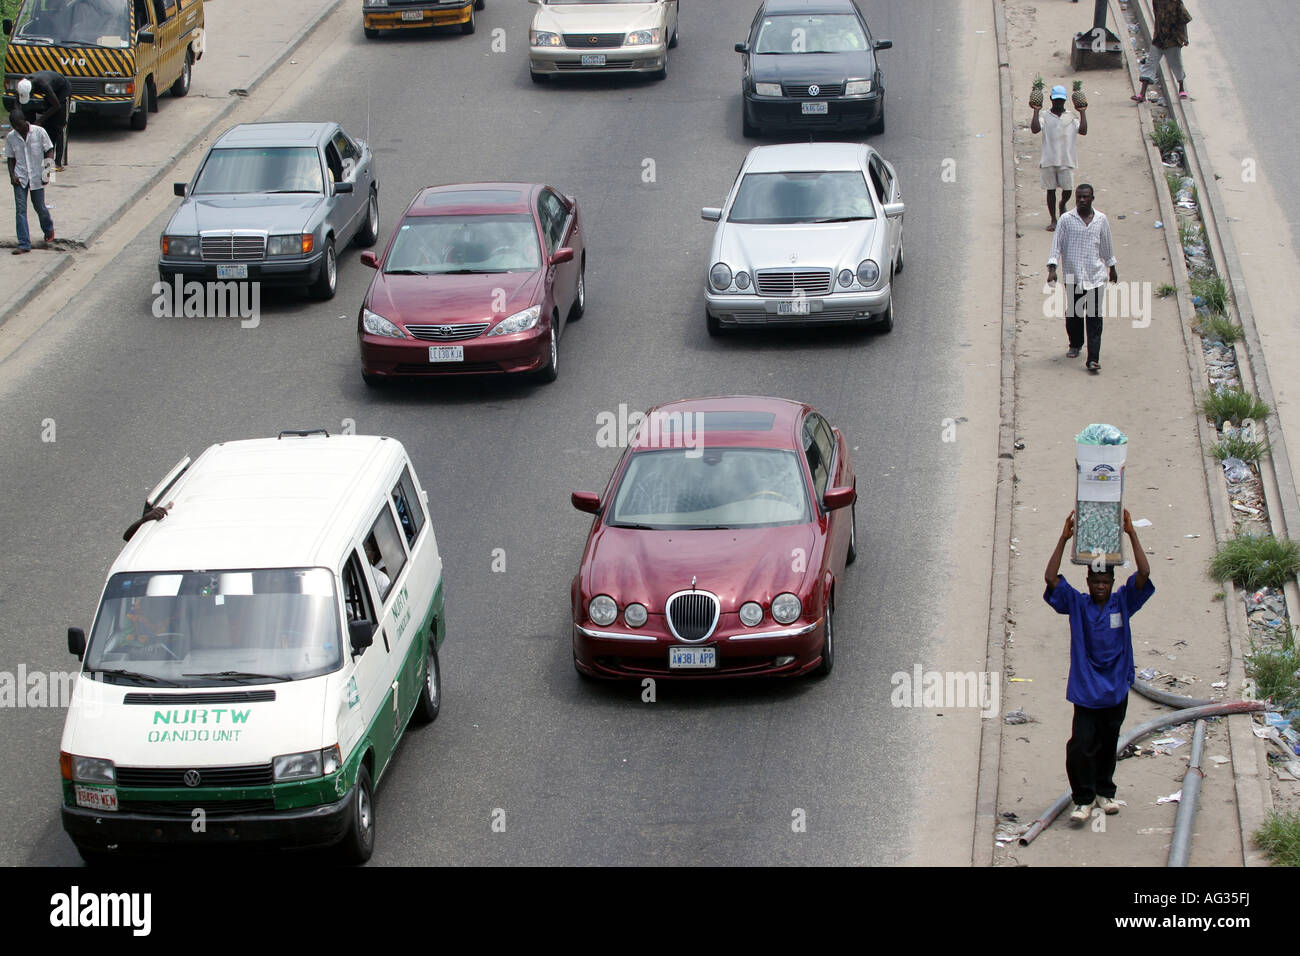 Les voitures et les piétons sur la rue animée, de Lagos au Nigéria, l'Afrique. Banque D'Images